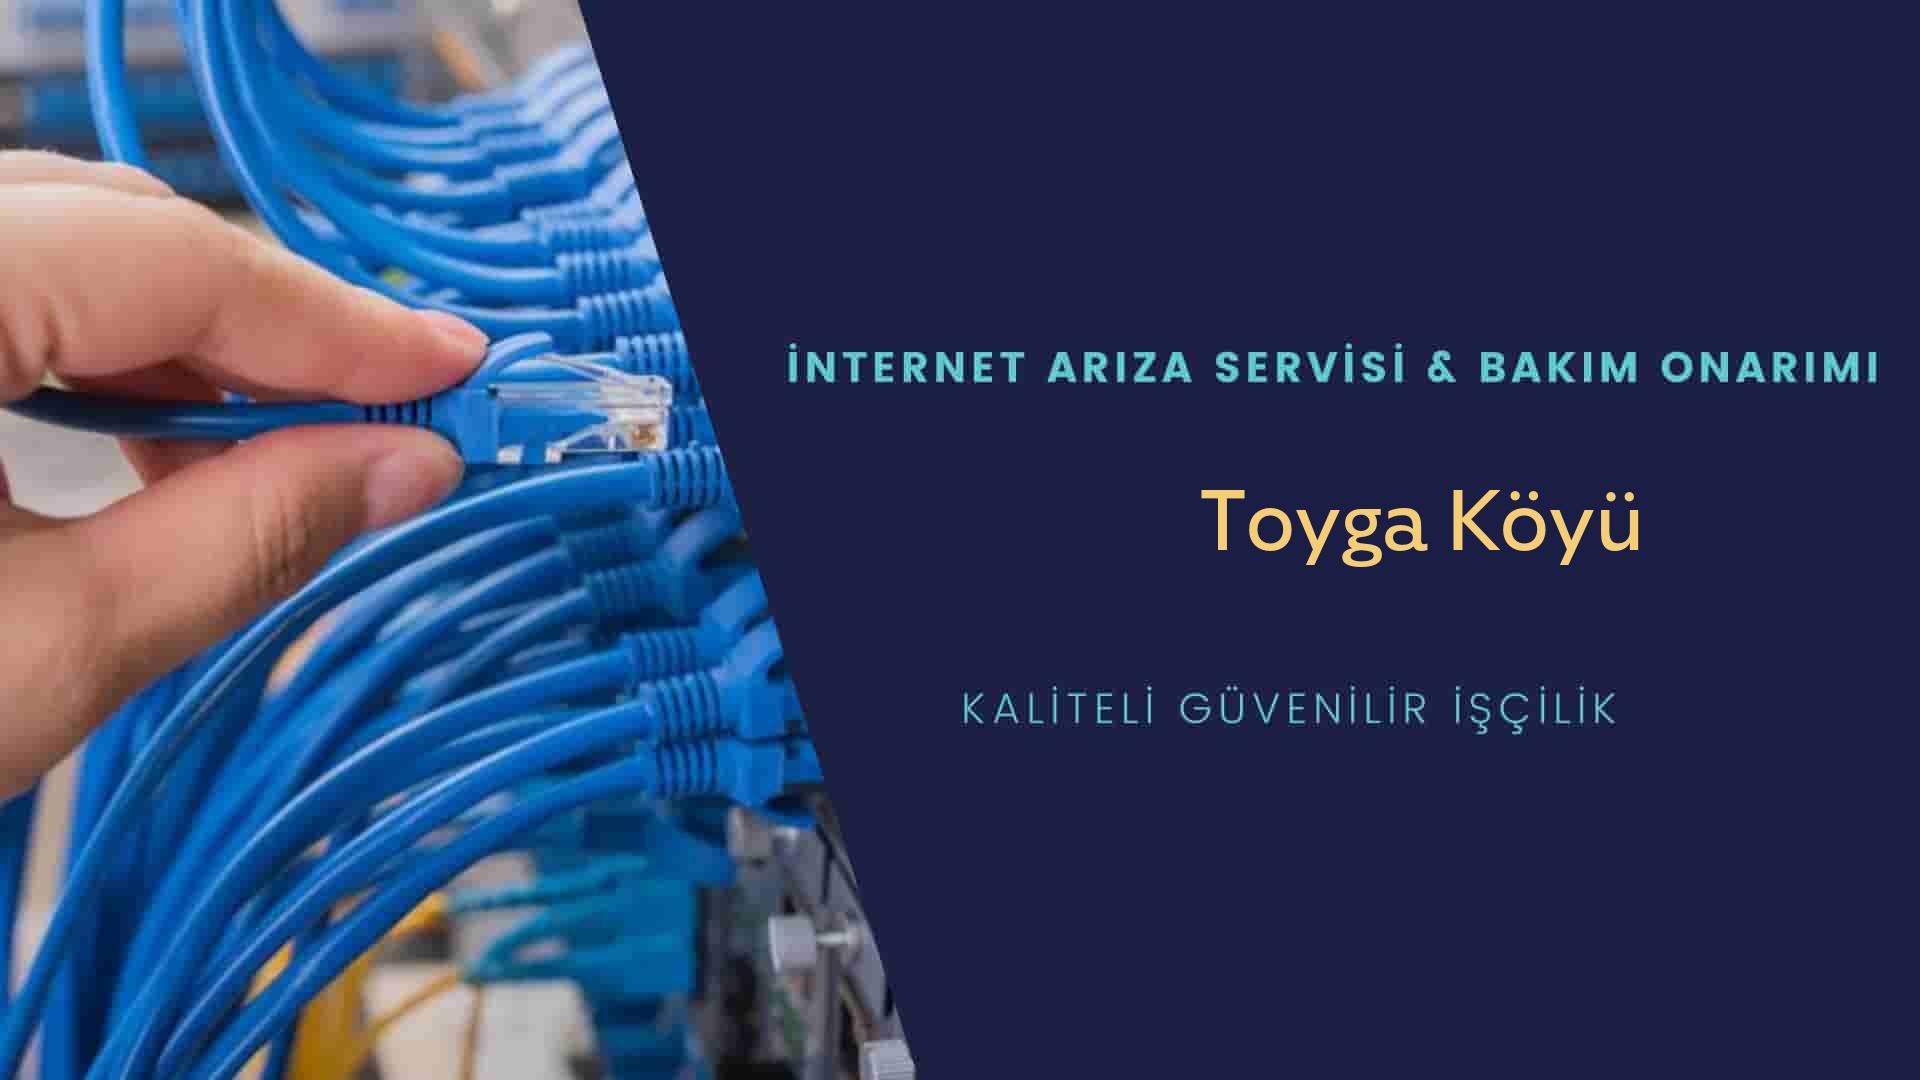 Toyga Köyü internet kablosu çekimi yapan yerler veya elektrikçiler mi? arıyorsunuz doğru yerdesiniz o zaman sizlere 7/24 yardımcı olacak profesyonel ustalarımız bir telefon kadar yakındır size.